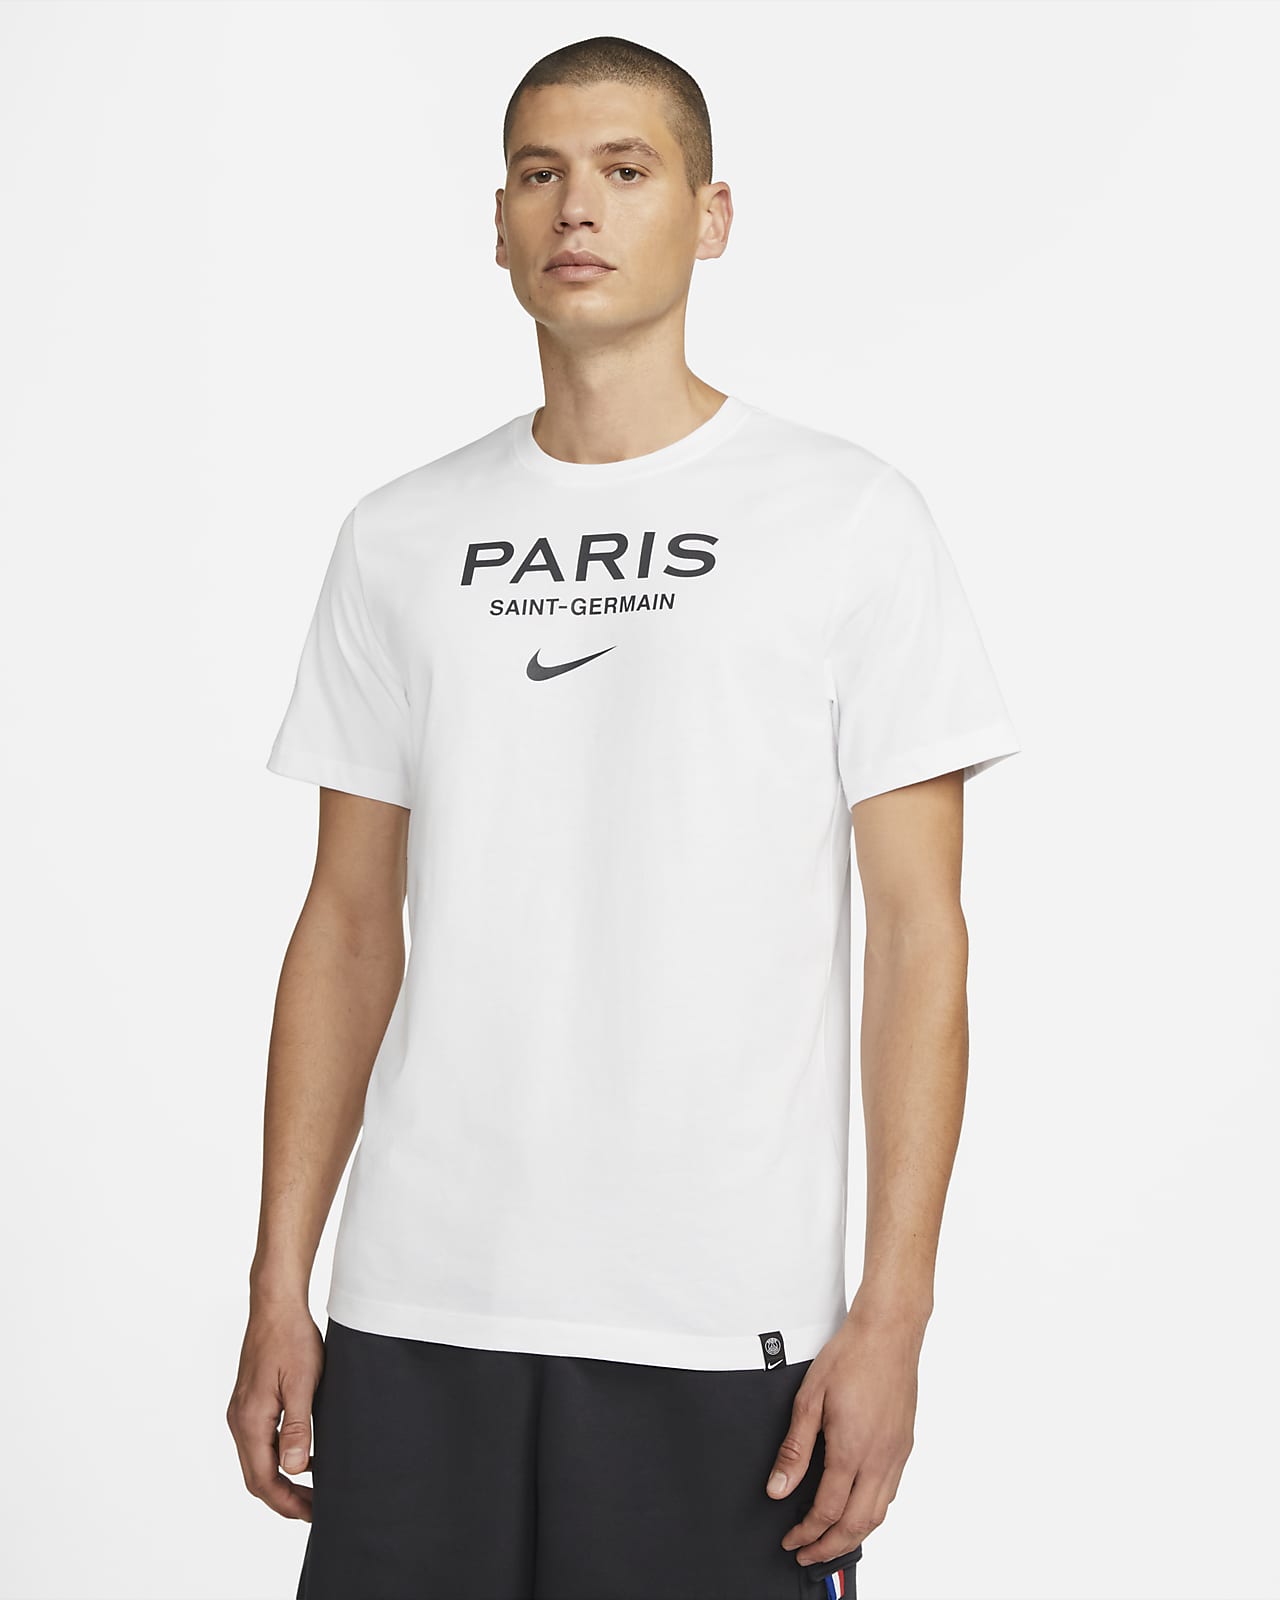 パリ サンジェルマン (PSG) スウッシュ メンズ ナイキ サッカー Tシャツ